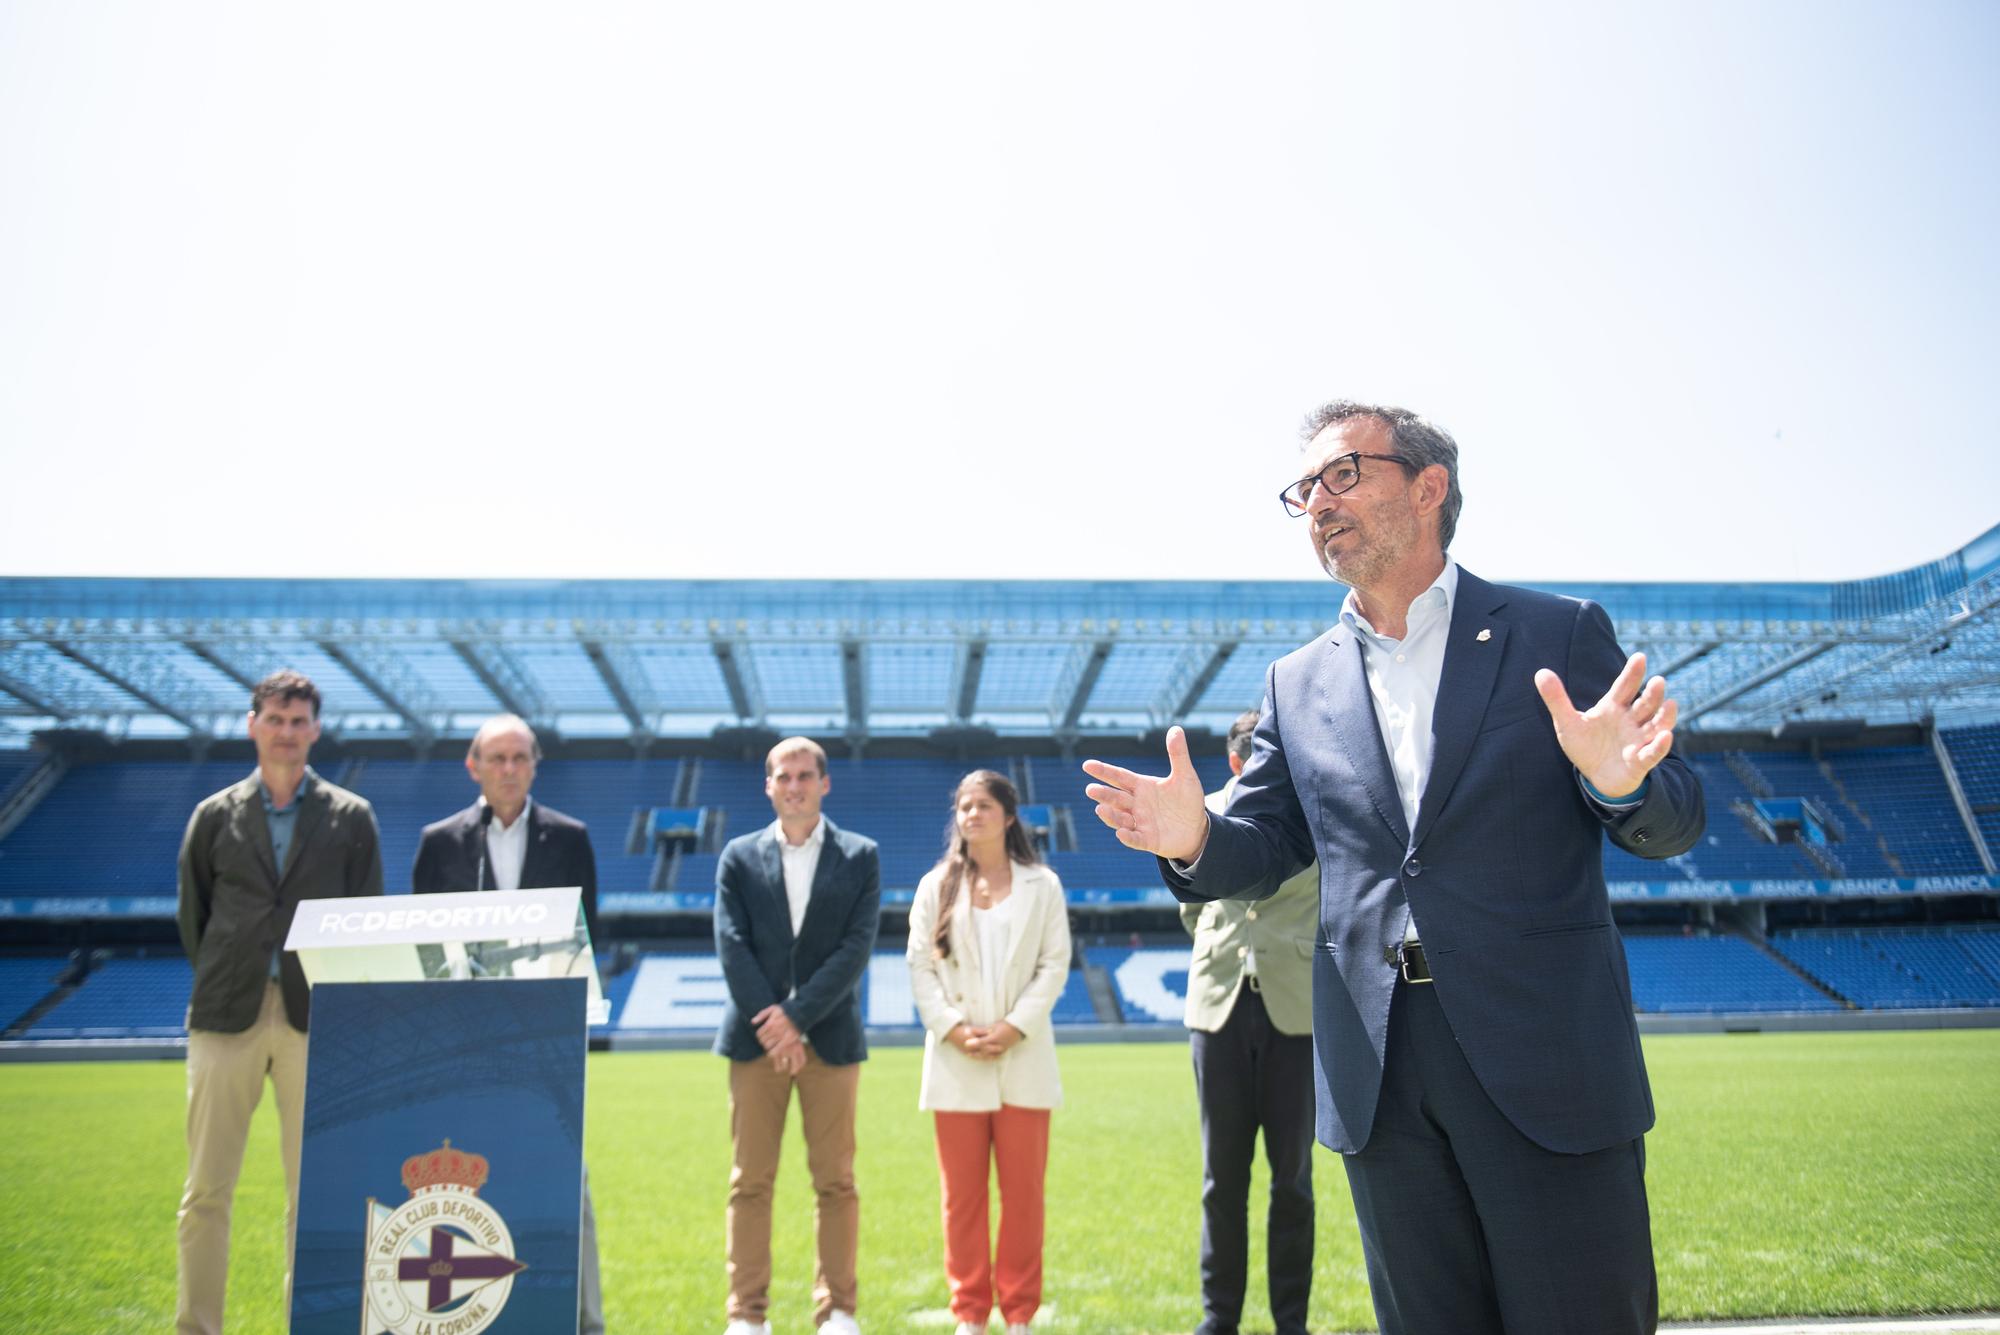 Nombramiento de Álvaro García Diéguez como nuevo presidente en la asamblea del Deportivo